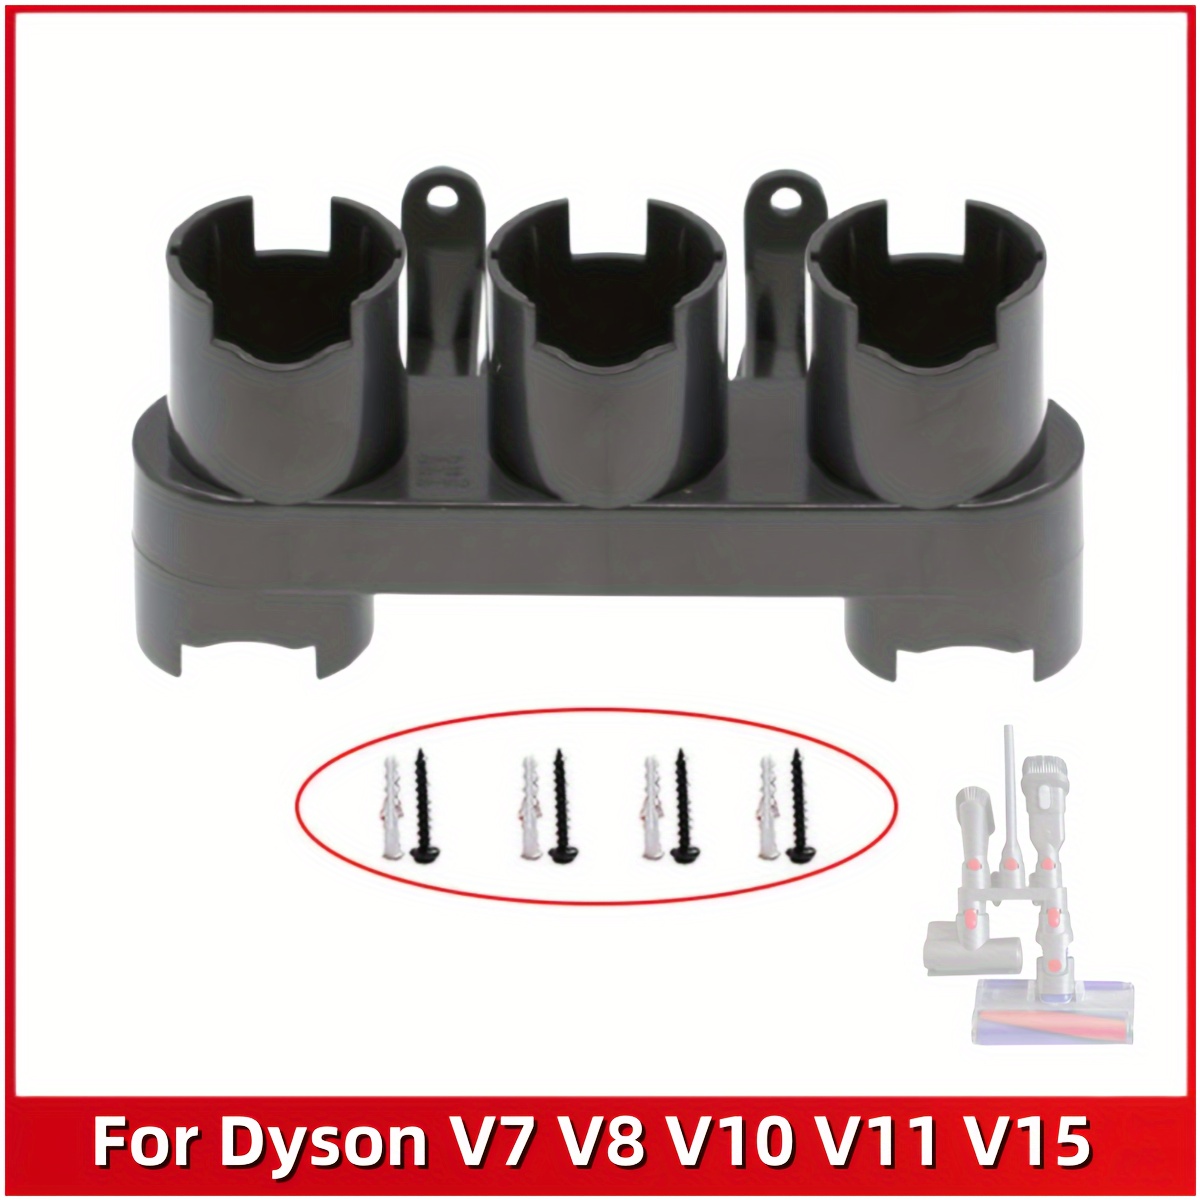 

Storage Bracket Holder For V7 V8 V10 V11 V15 Vacuum Cleaner Attachment Brush Stand Tool Nozzle Base Holder